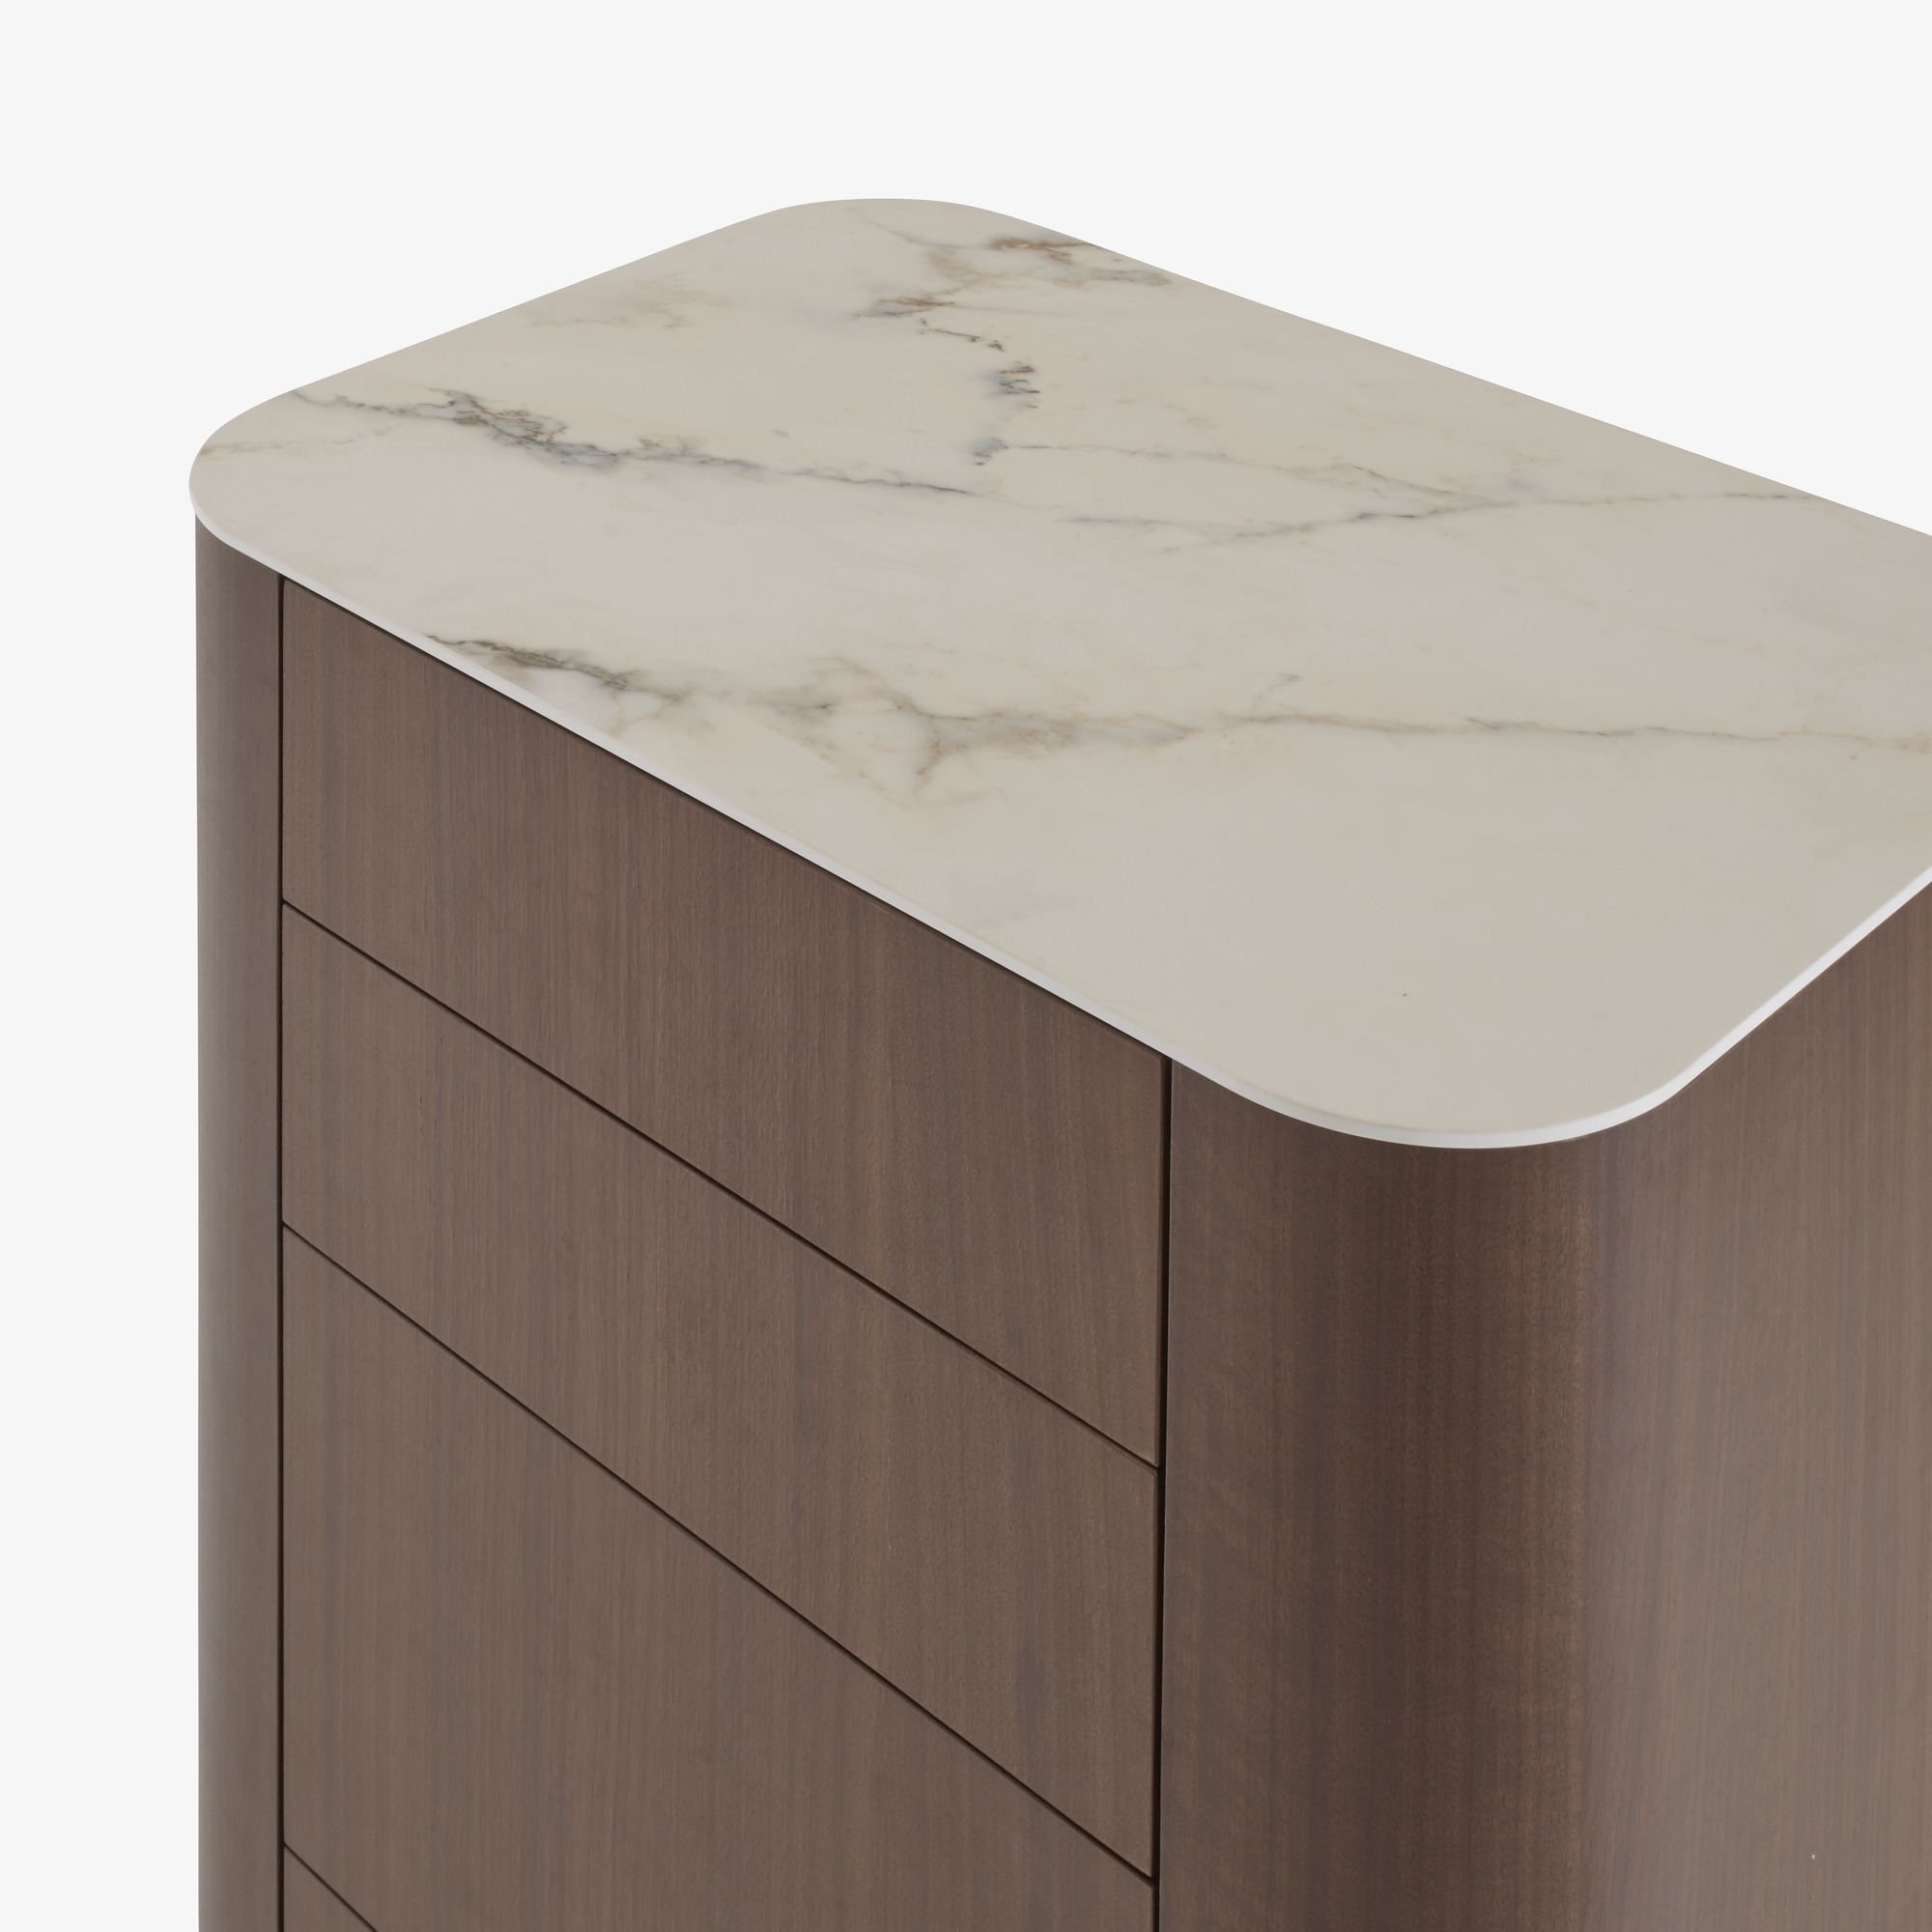 Image 带多个抽屉的柜子 深色胡桃木 桌面由白色大理石效果的太空瓷制成 6